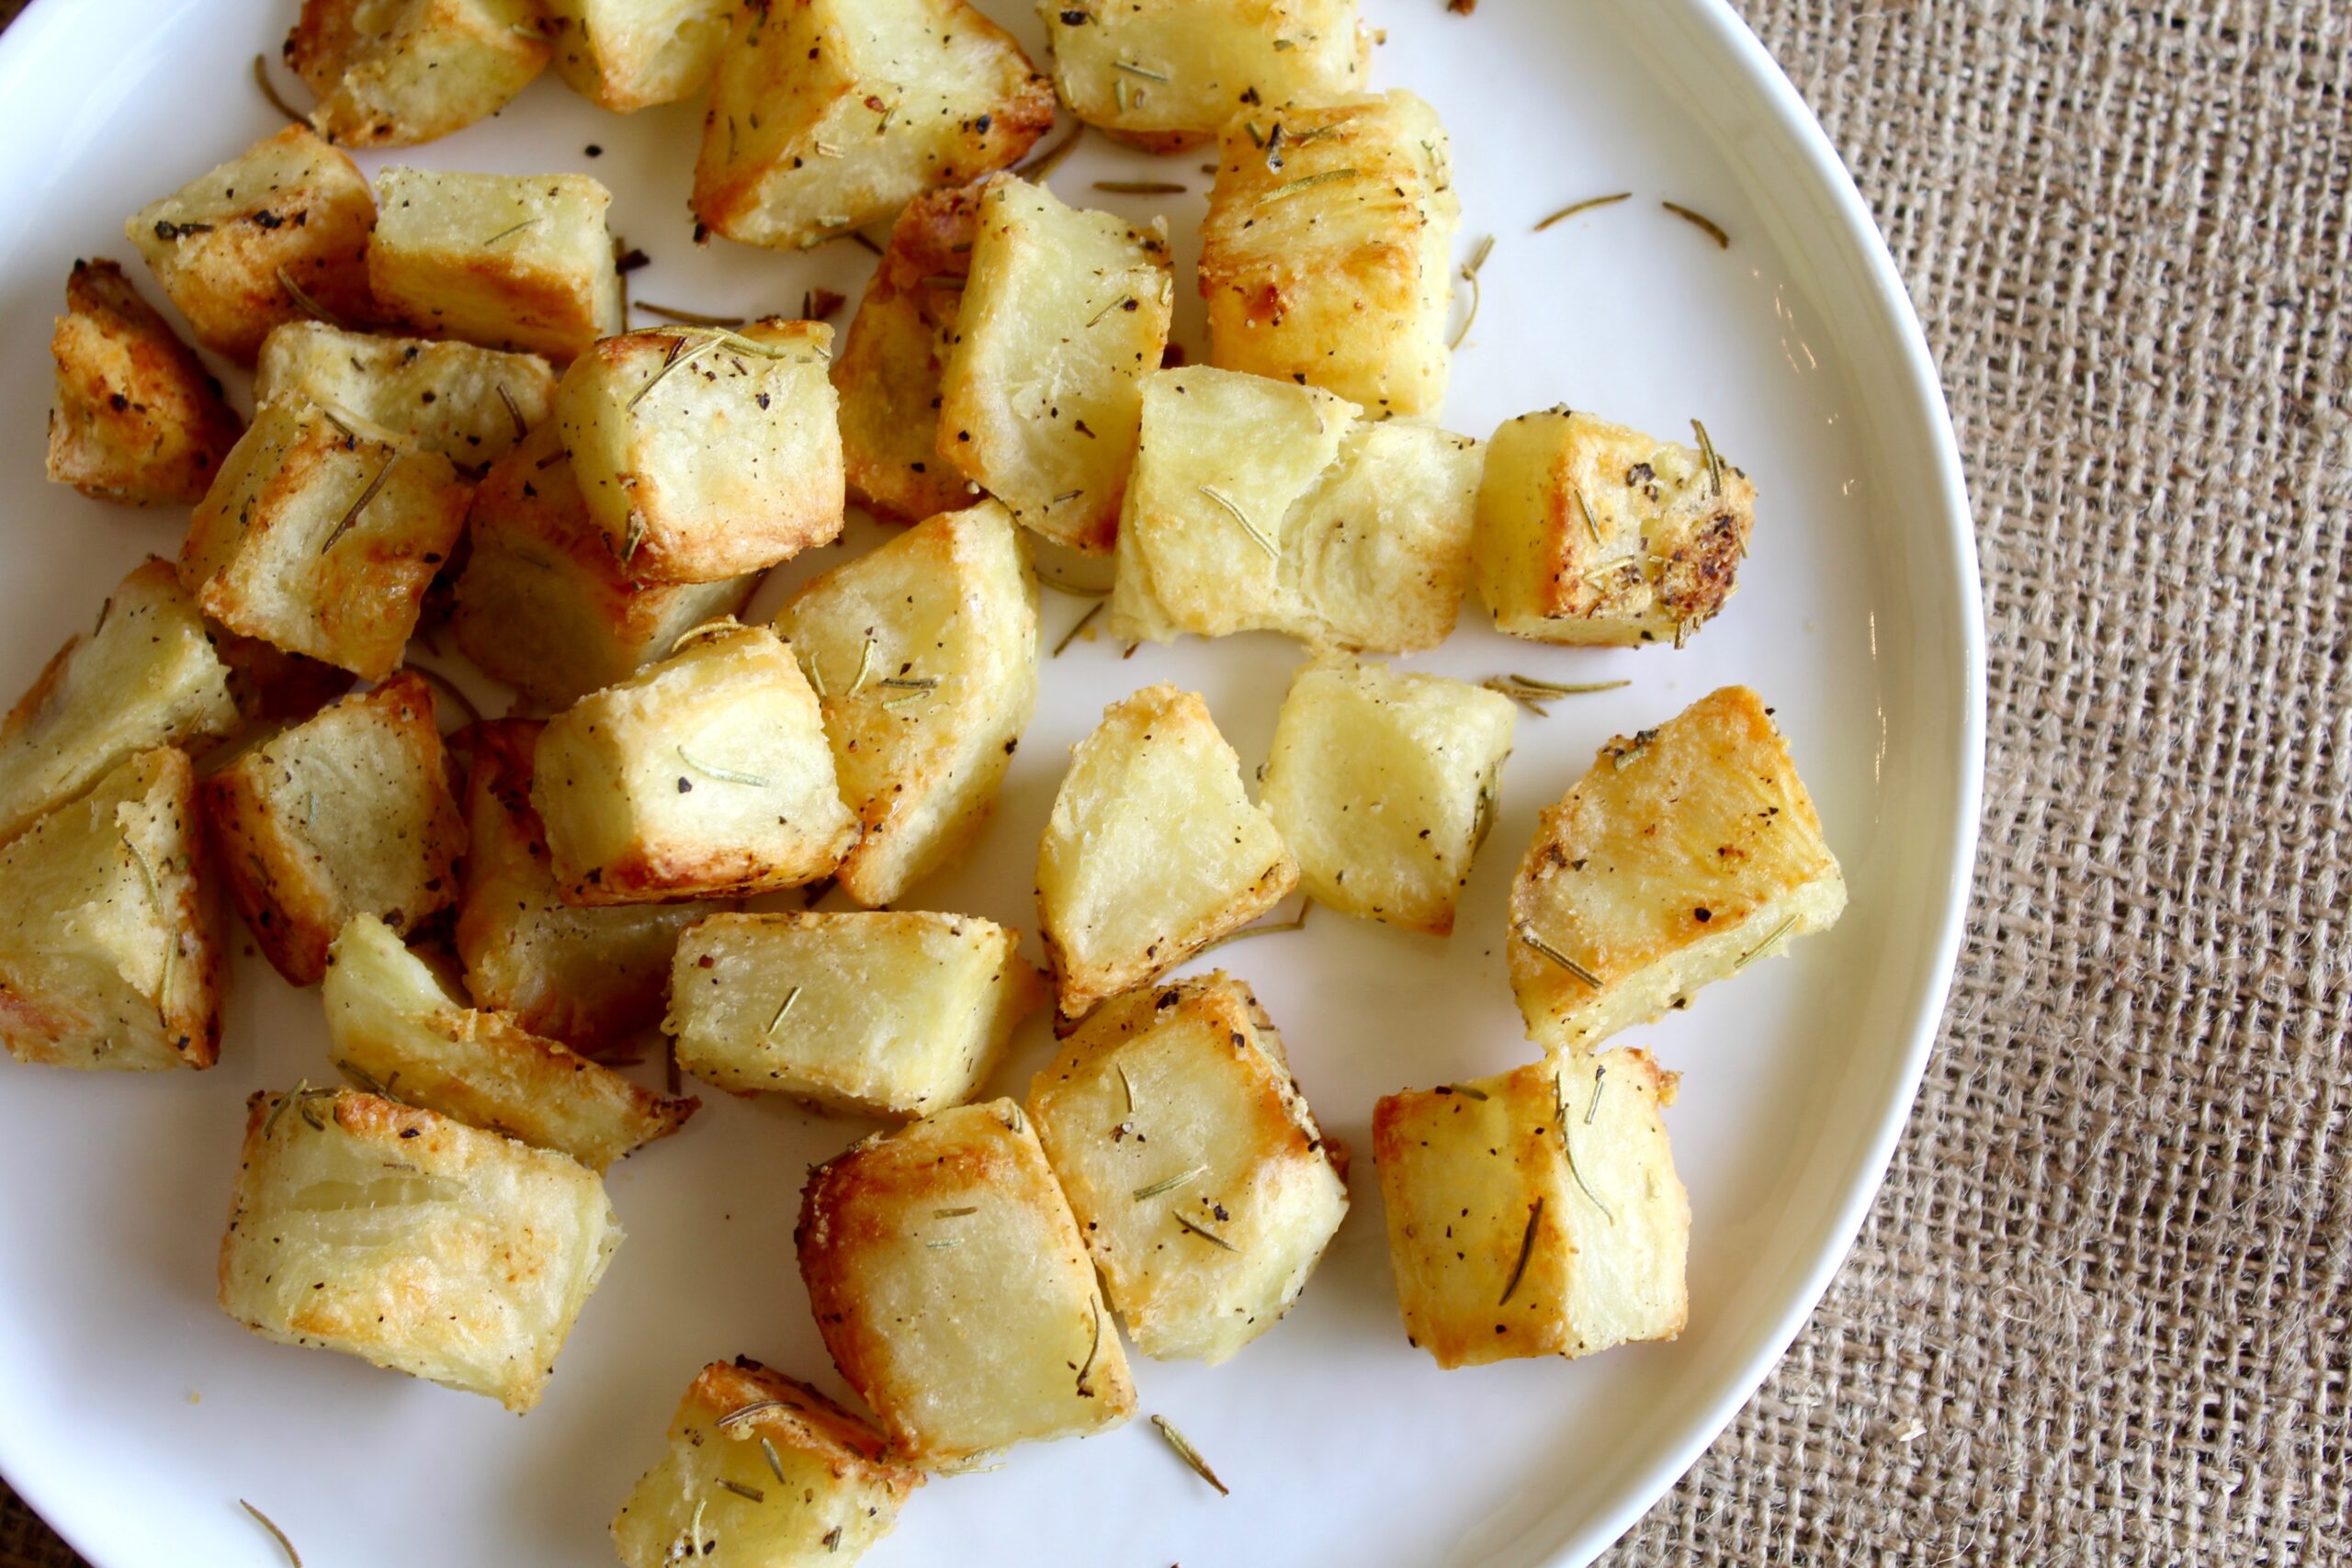 Crispy Rosemary Roasted Potatoes